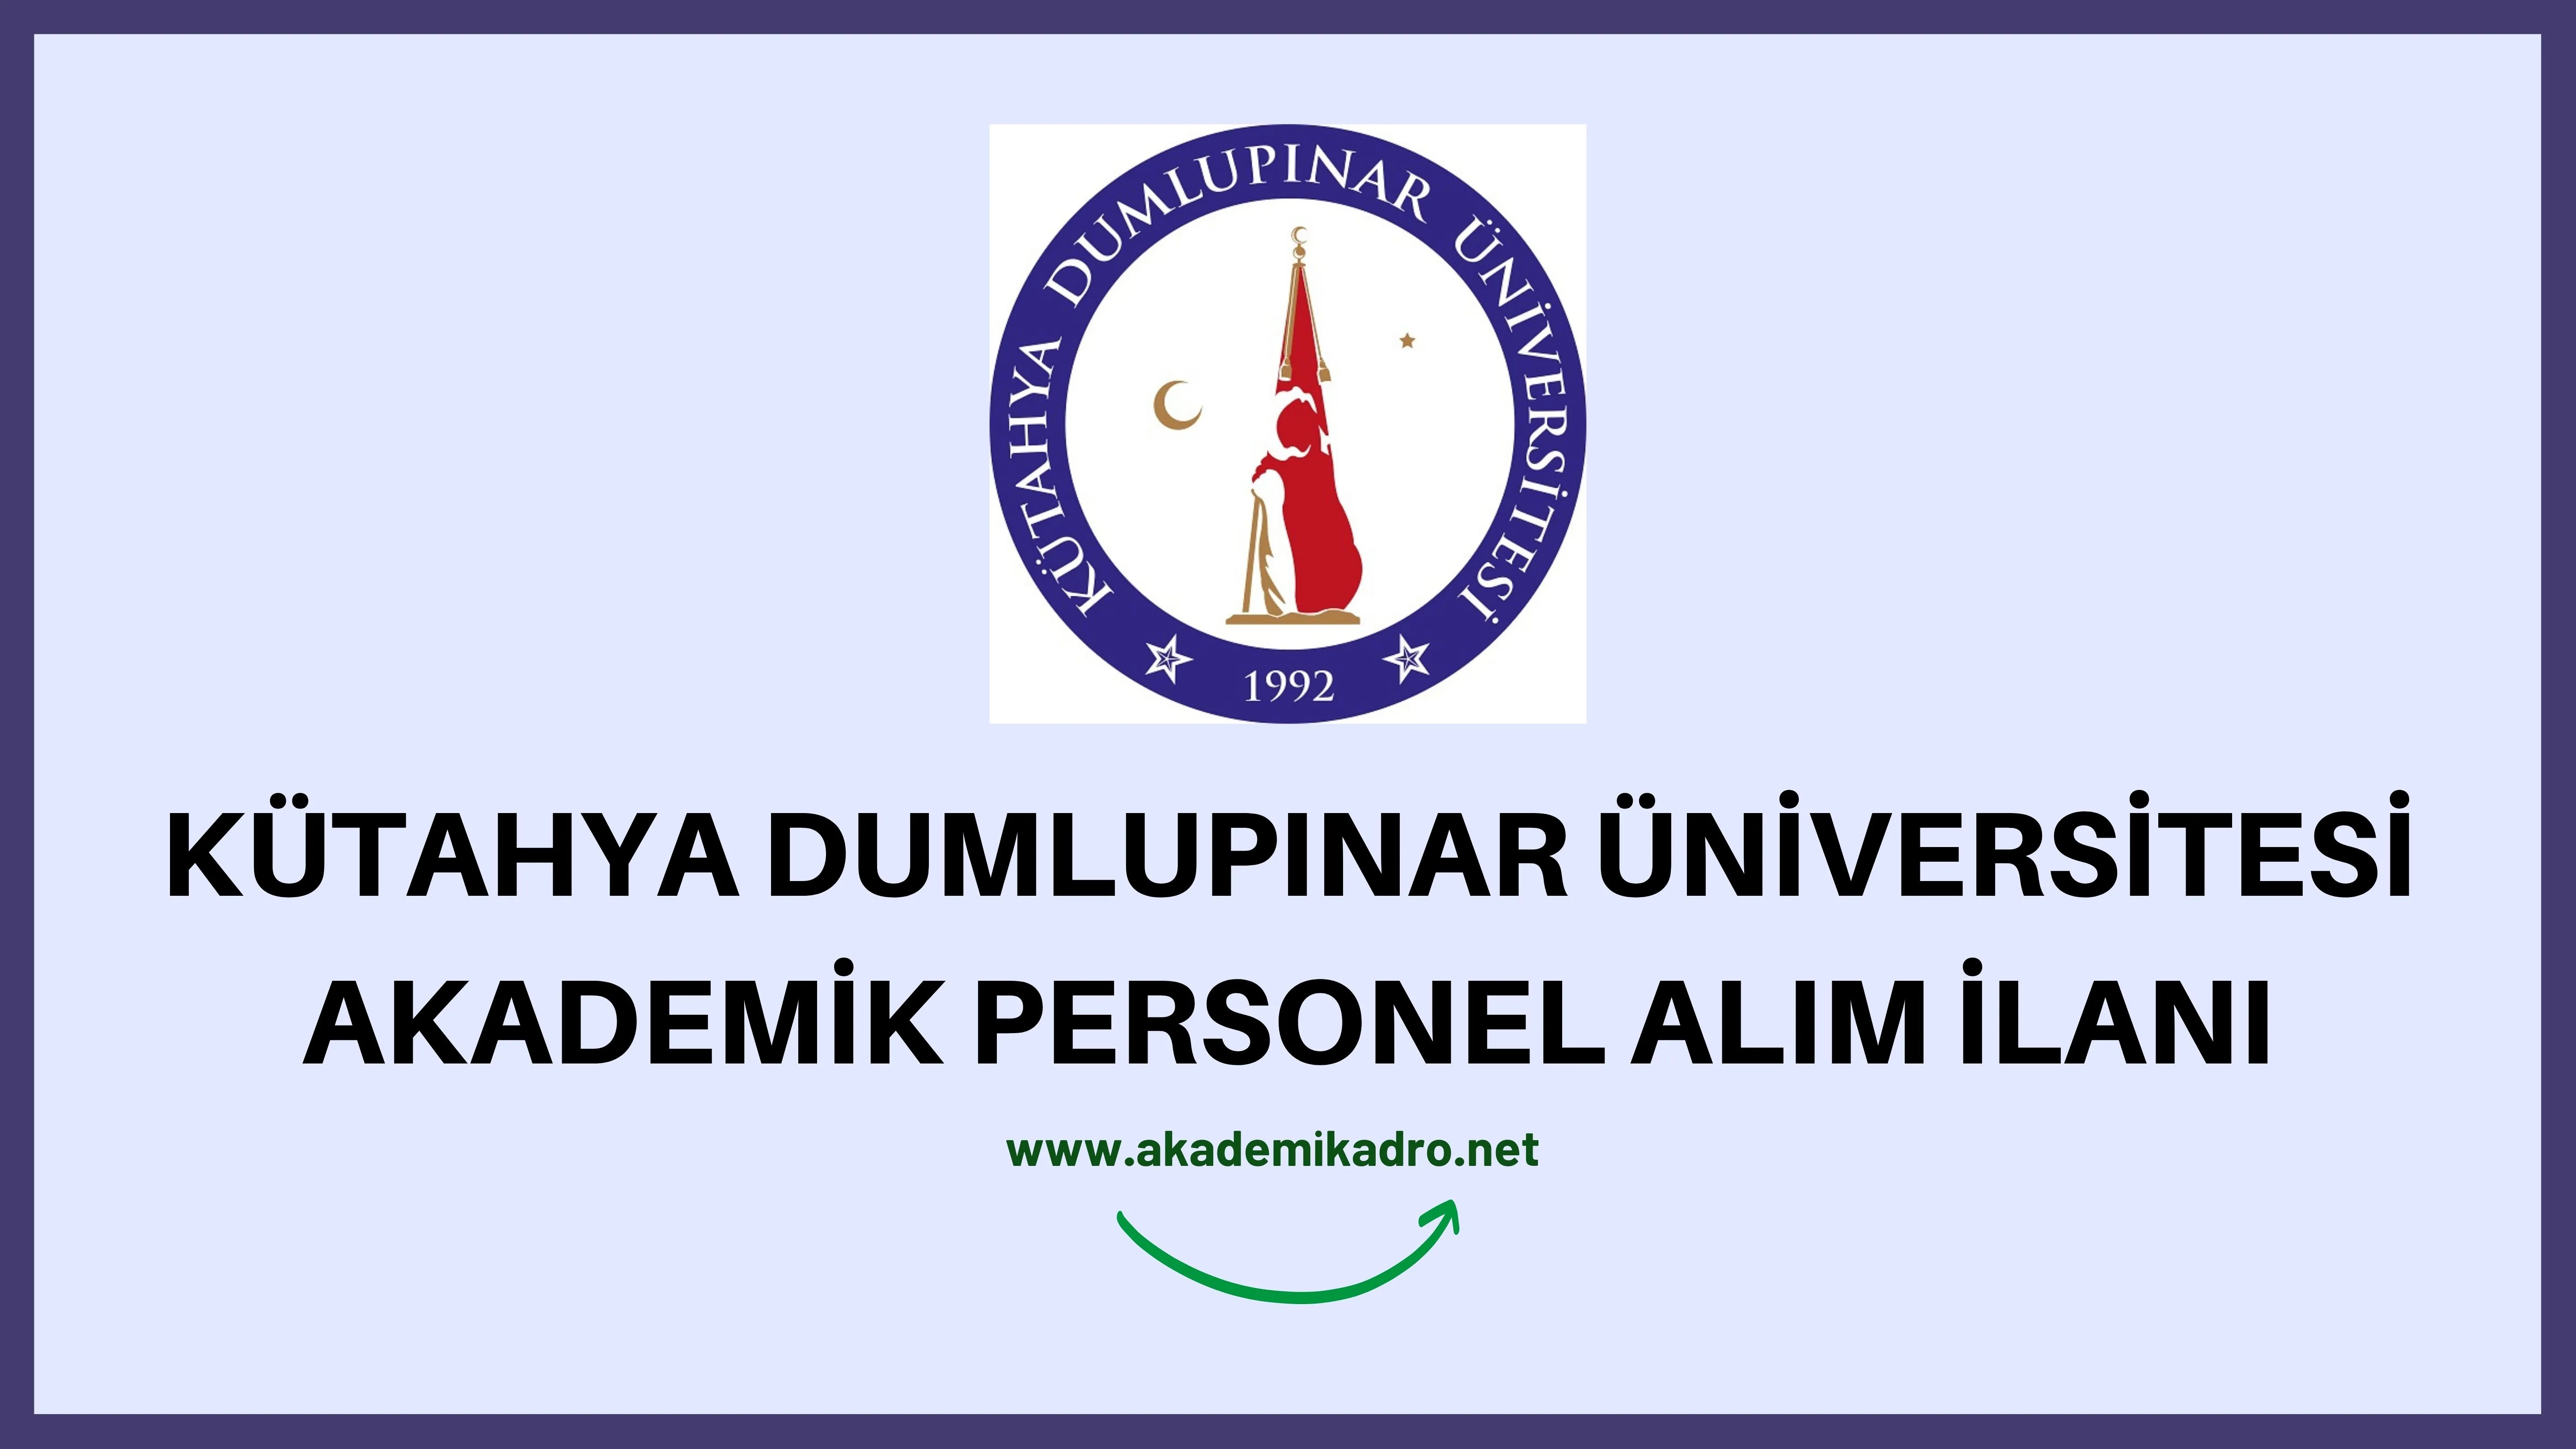 Kütahya Dumlupınar Üniversitesi 14 öğretim üyesi ve öğretim görevlisi alacaktır.